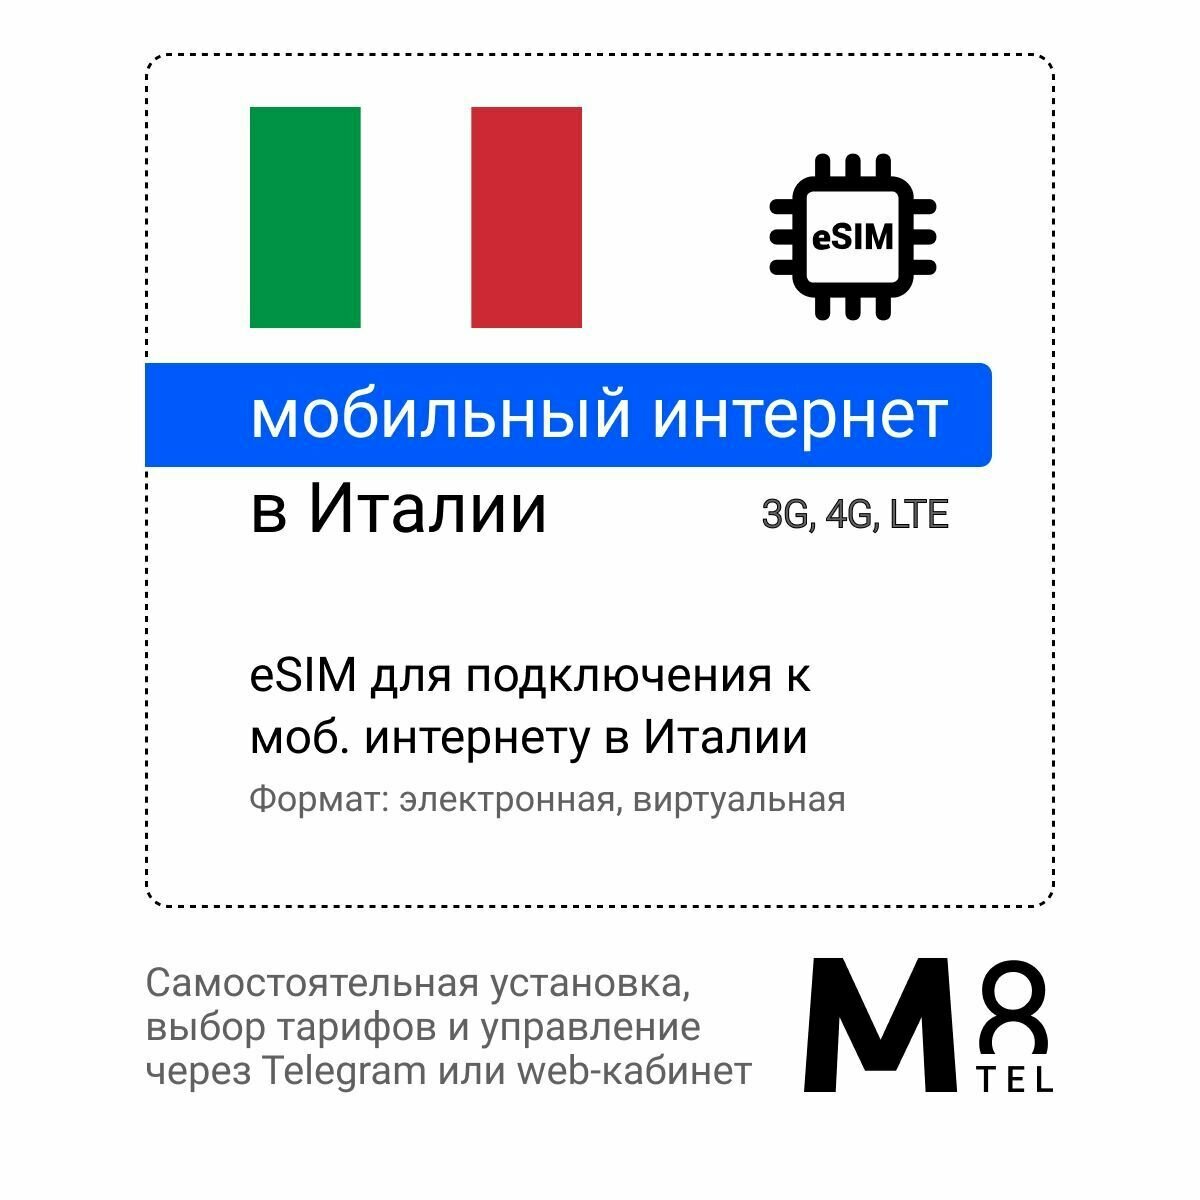 Туристическая электронная SIM-карта - eSIM для Италии от М8 (виртуальная)